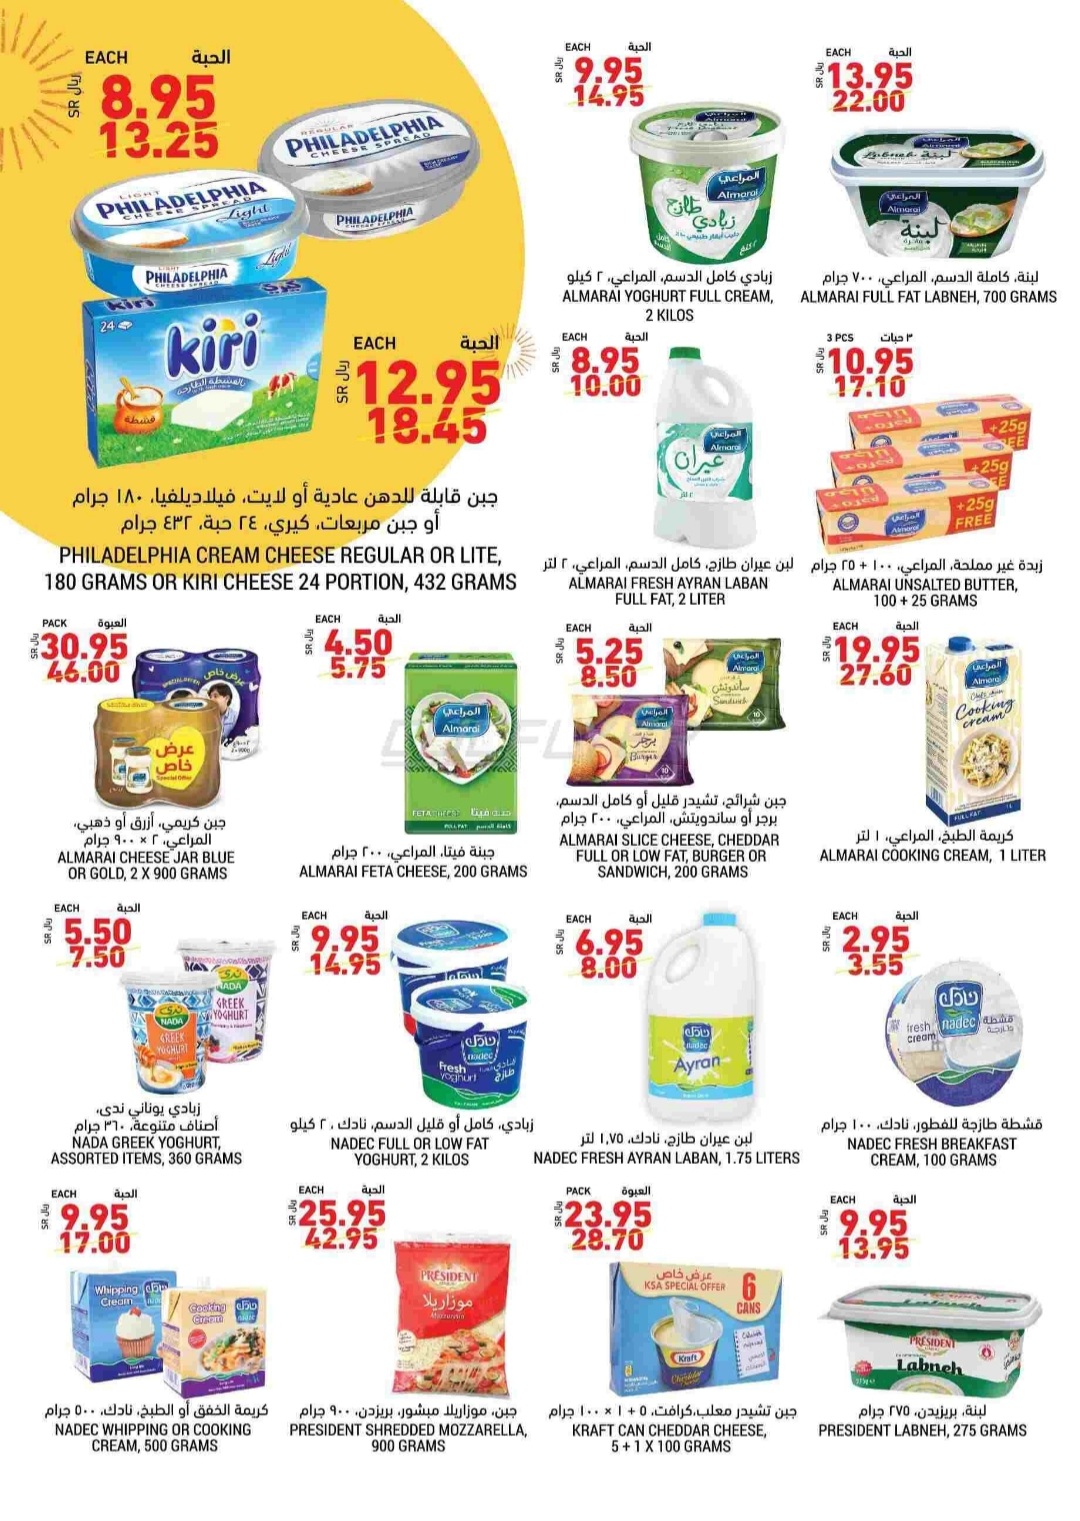 أسعار وخصومات المنتجات الغذائية من أسواق التميمي في نهاية يوليو